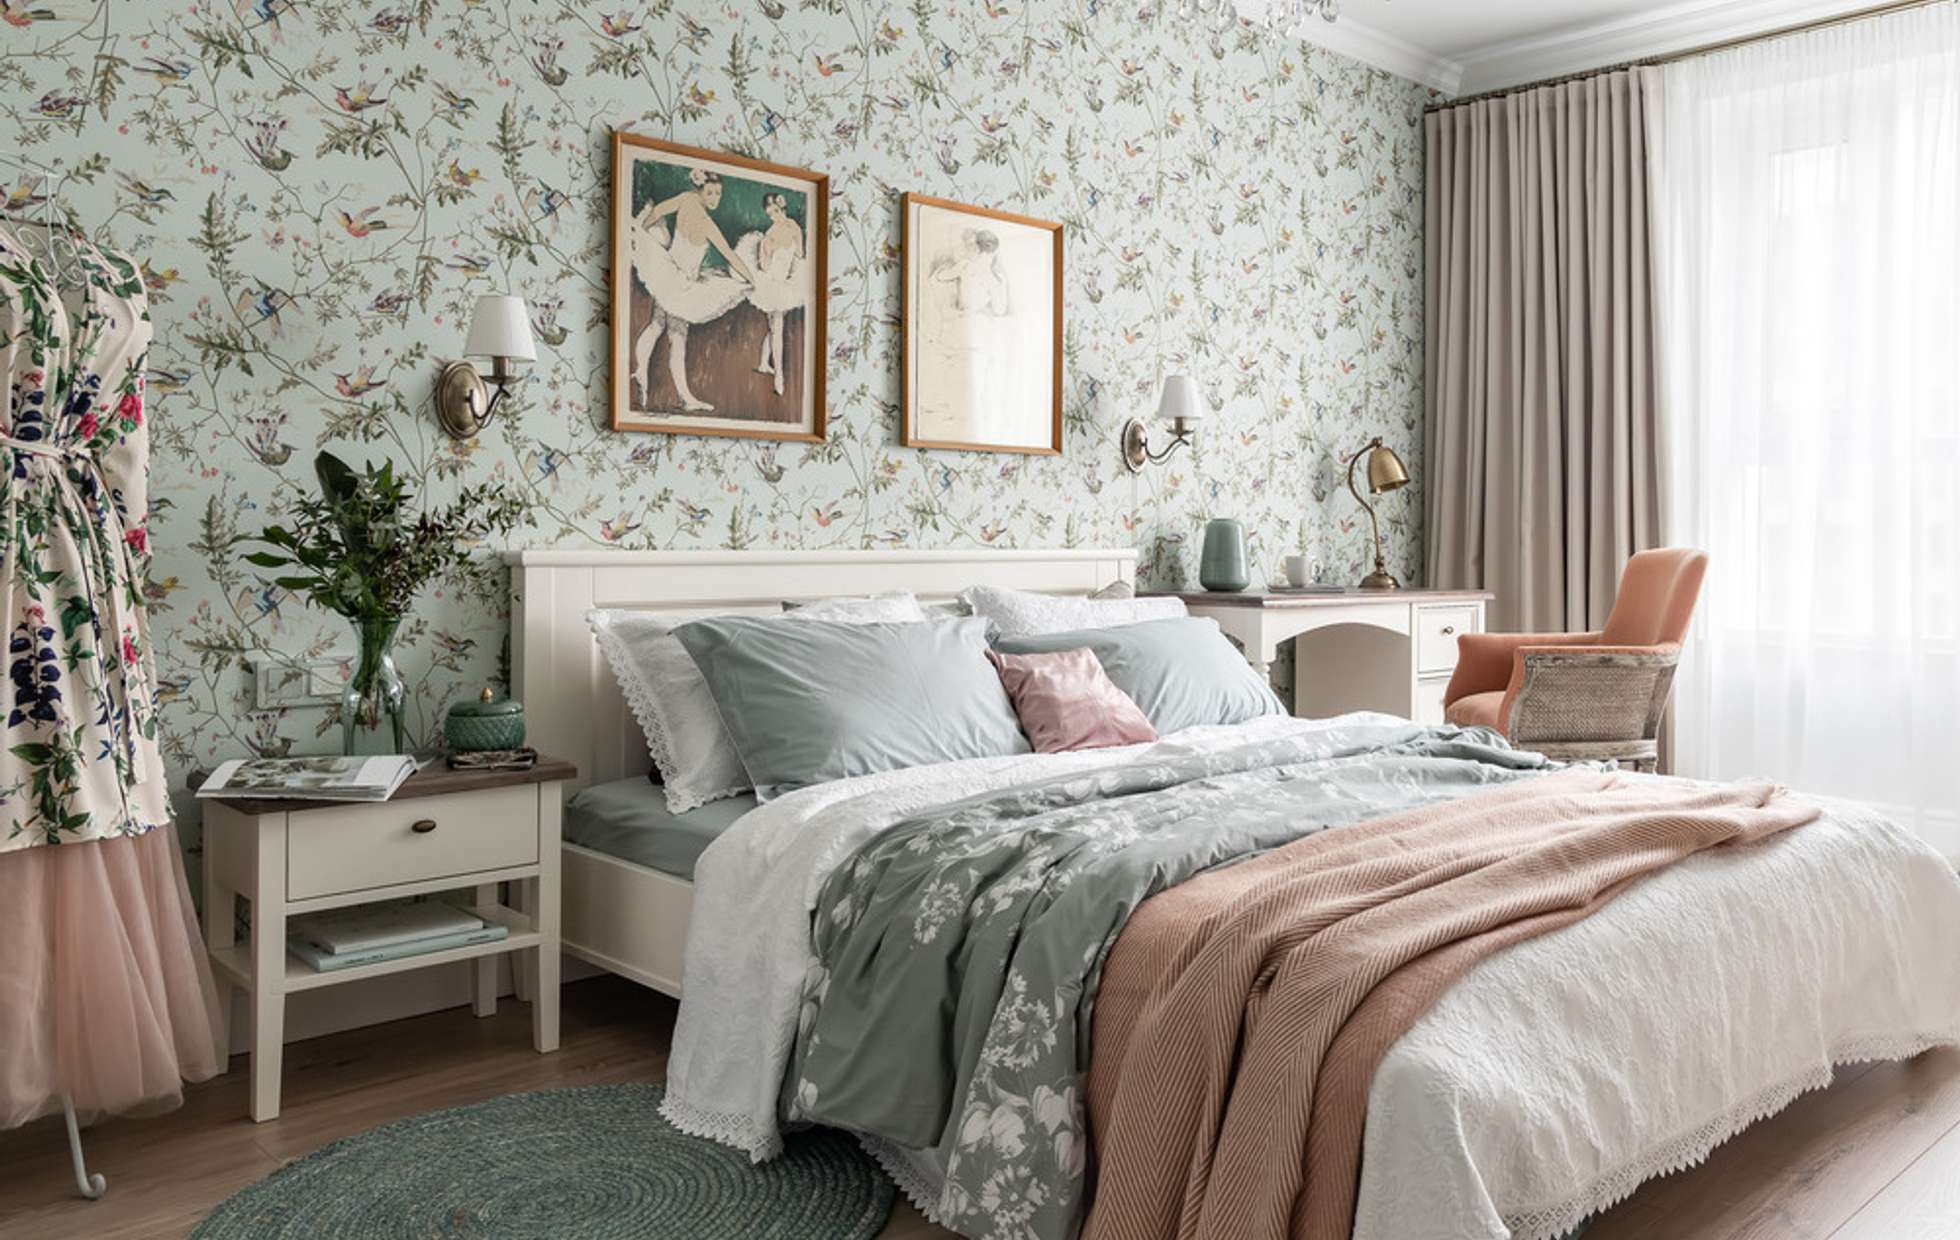 Trang trí phòng ngủ nữ phong cách cổ điển với giấy dán tường hoa nhí